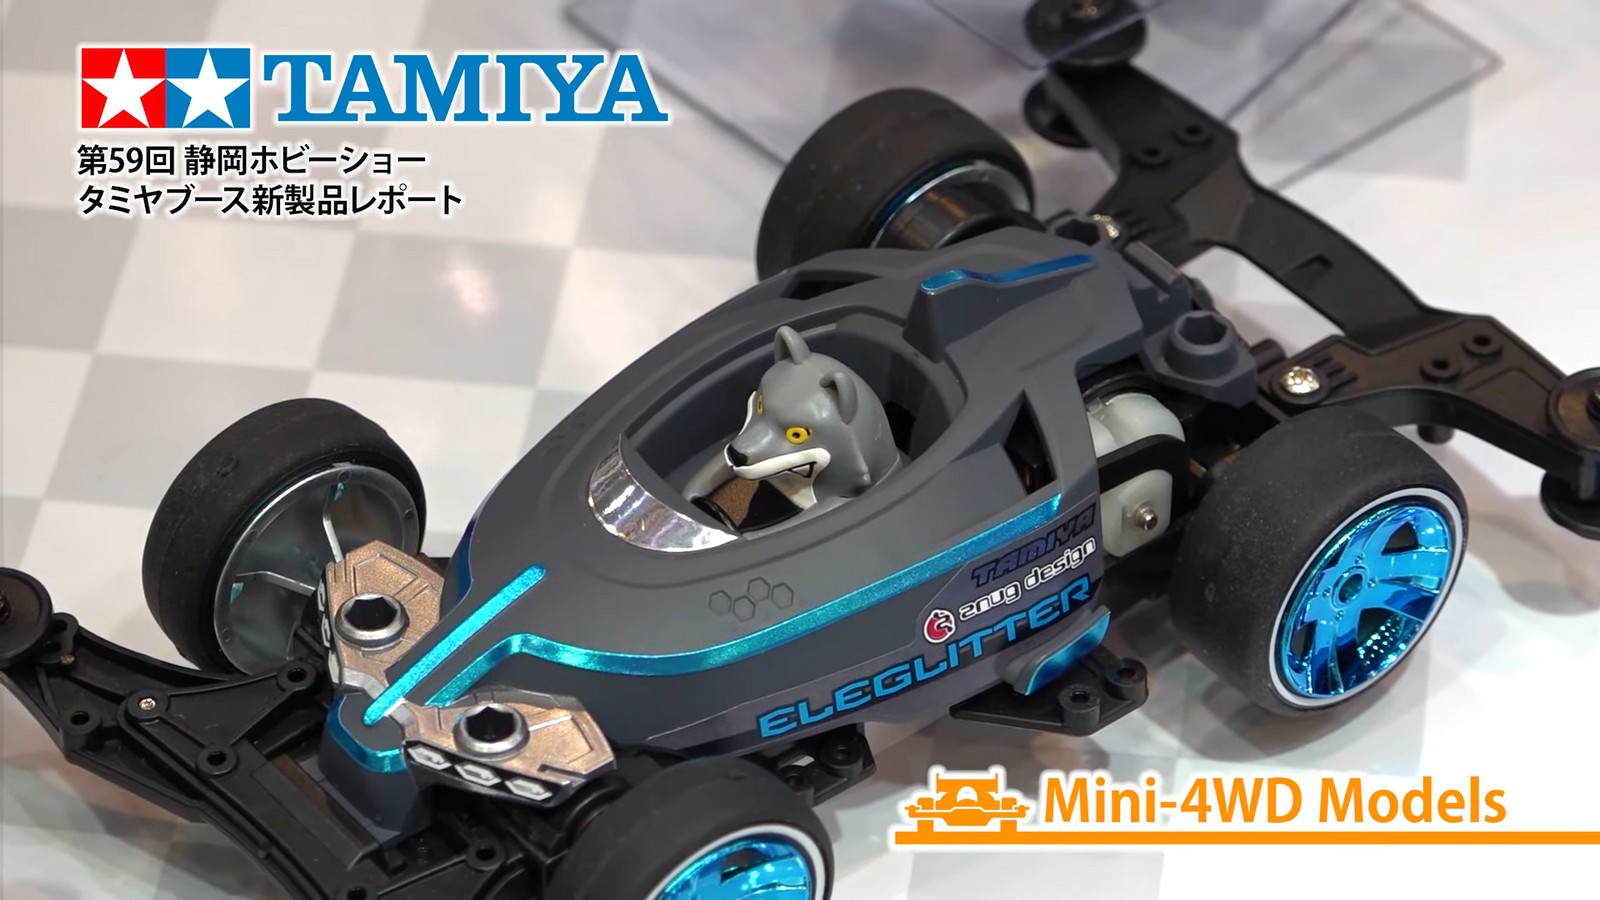 Tamiya mini RC buggy collection - TamiyaBlog